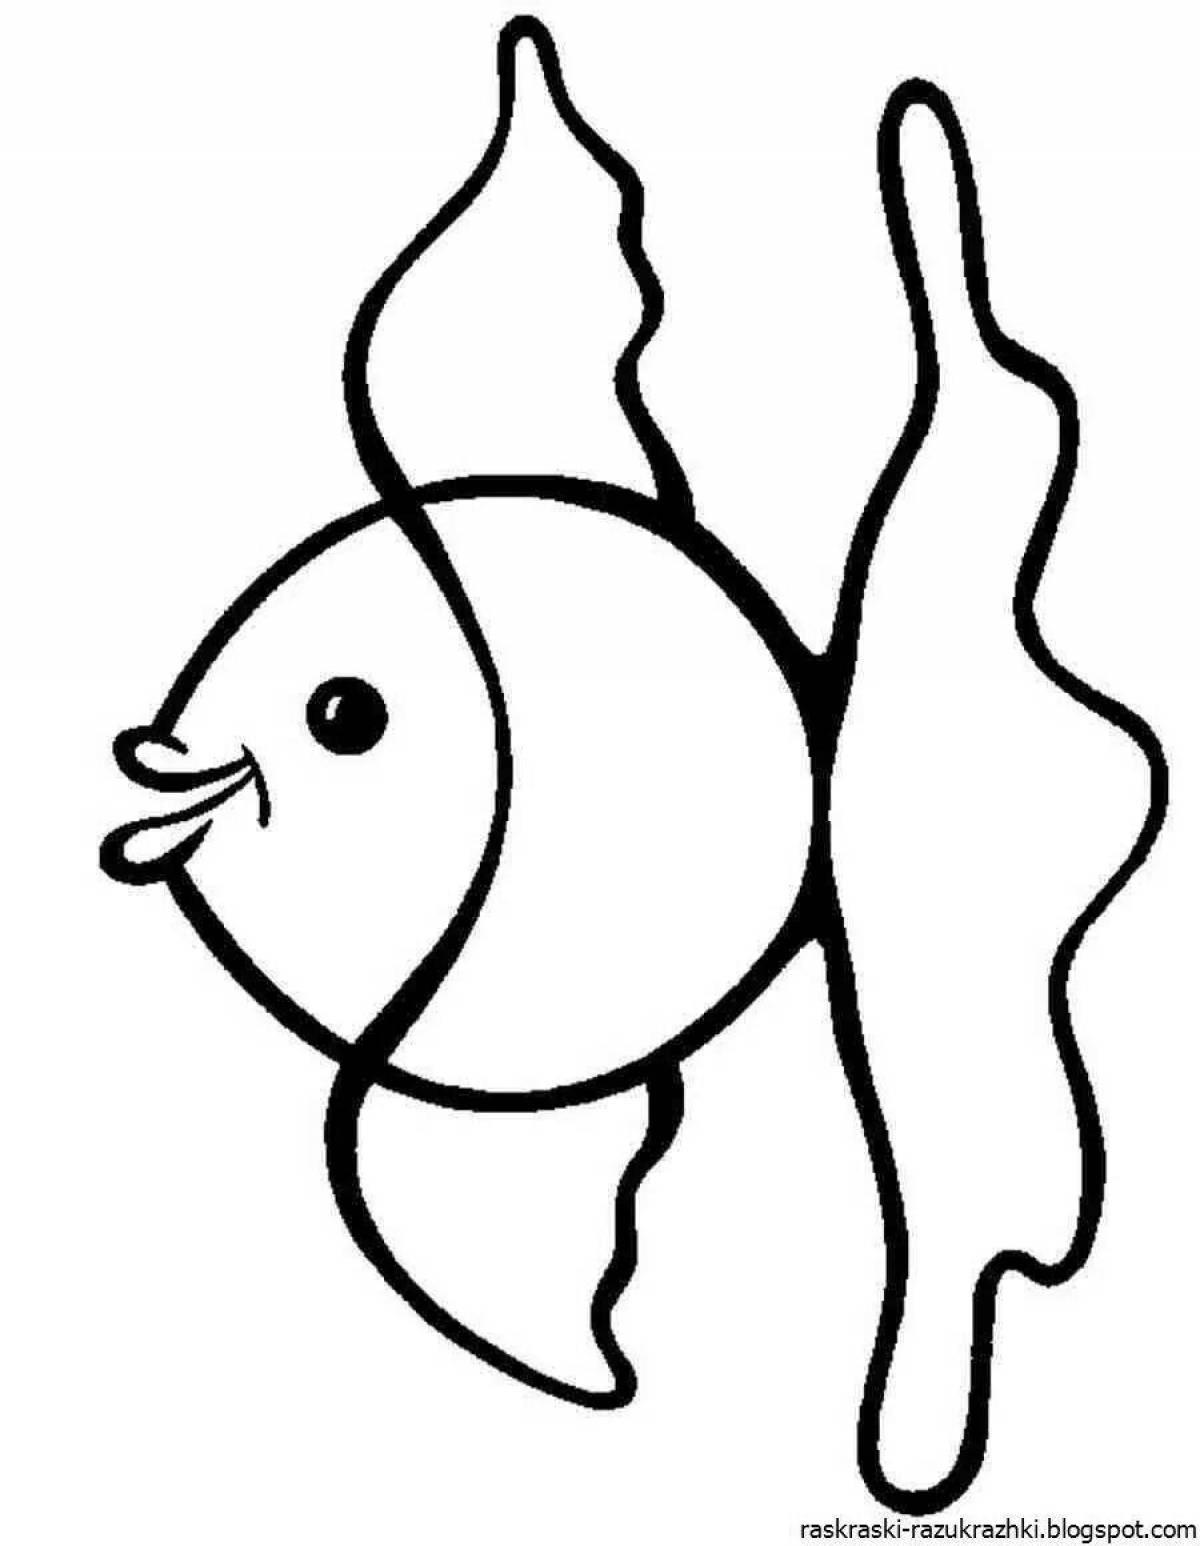 Cute simple fish coloring book